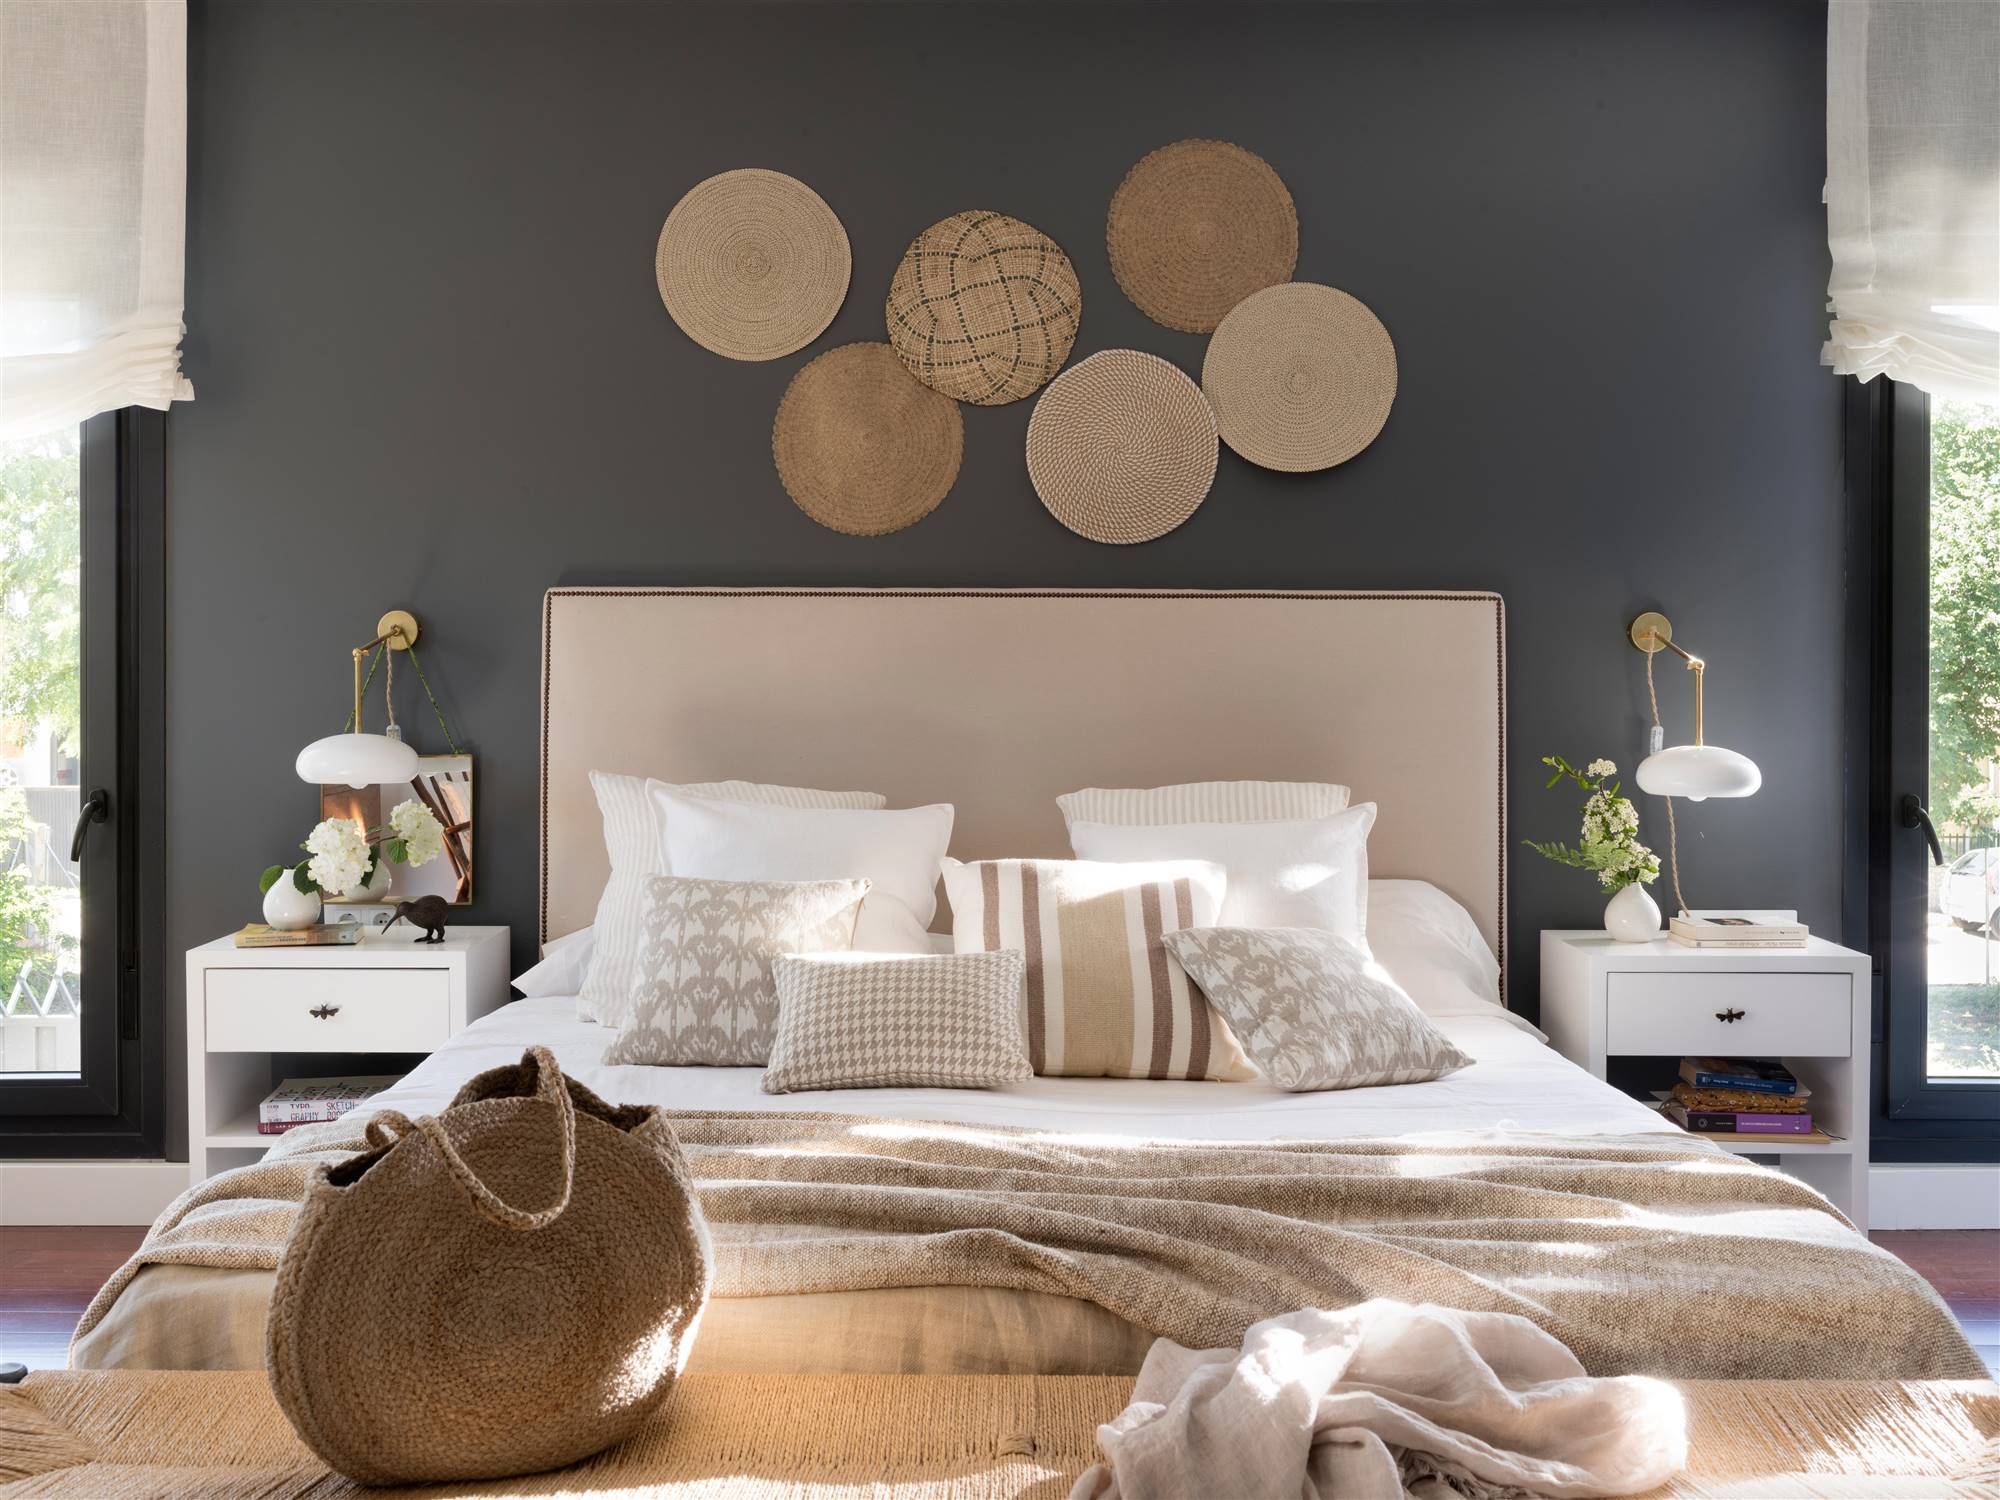 Un dormitorio en tonos beige y grises muy elegante.